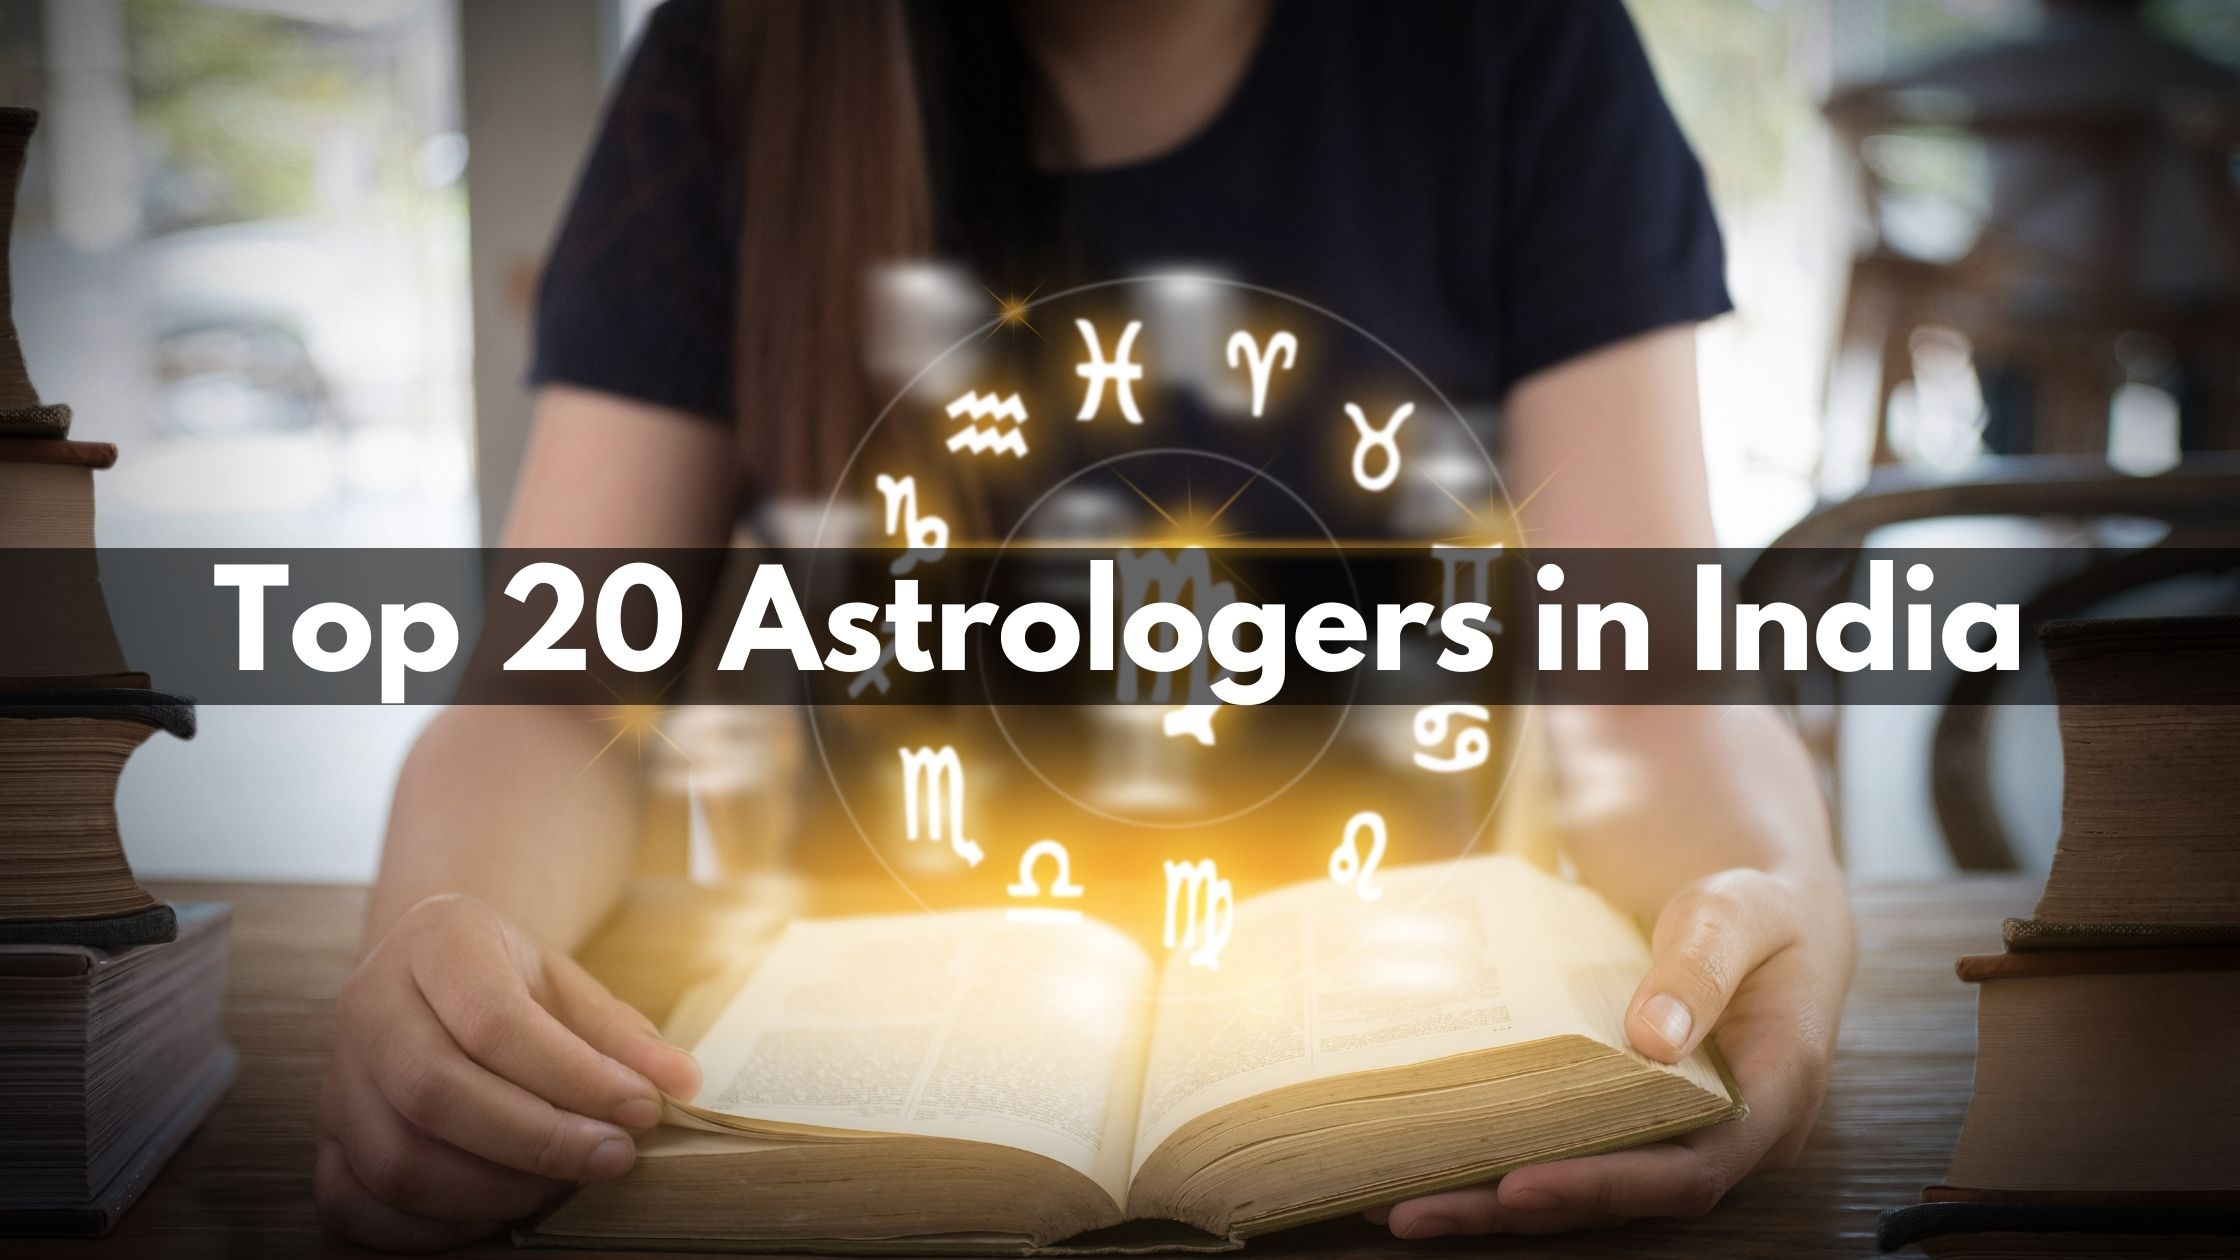 Best Astrologers in India